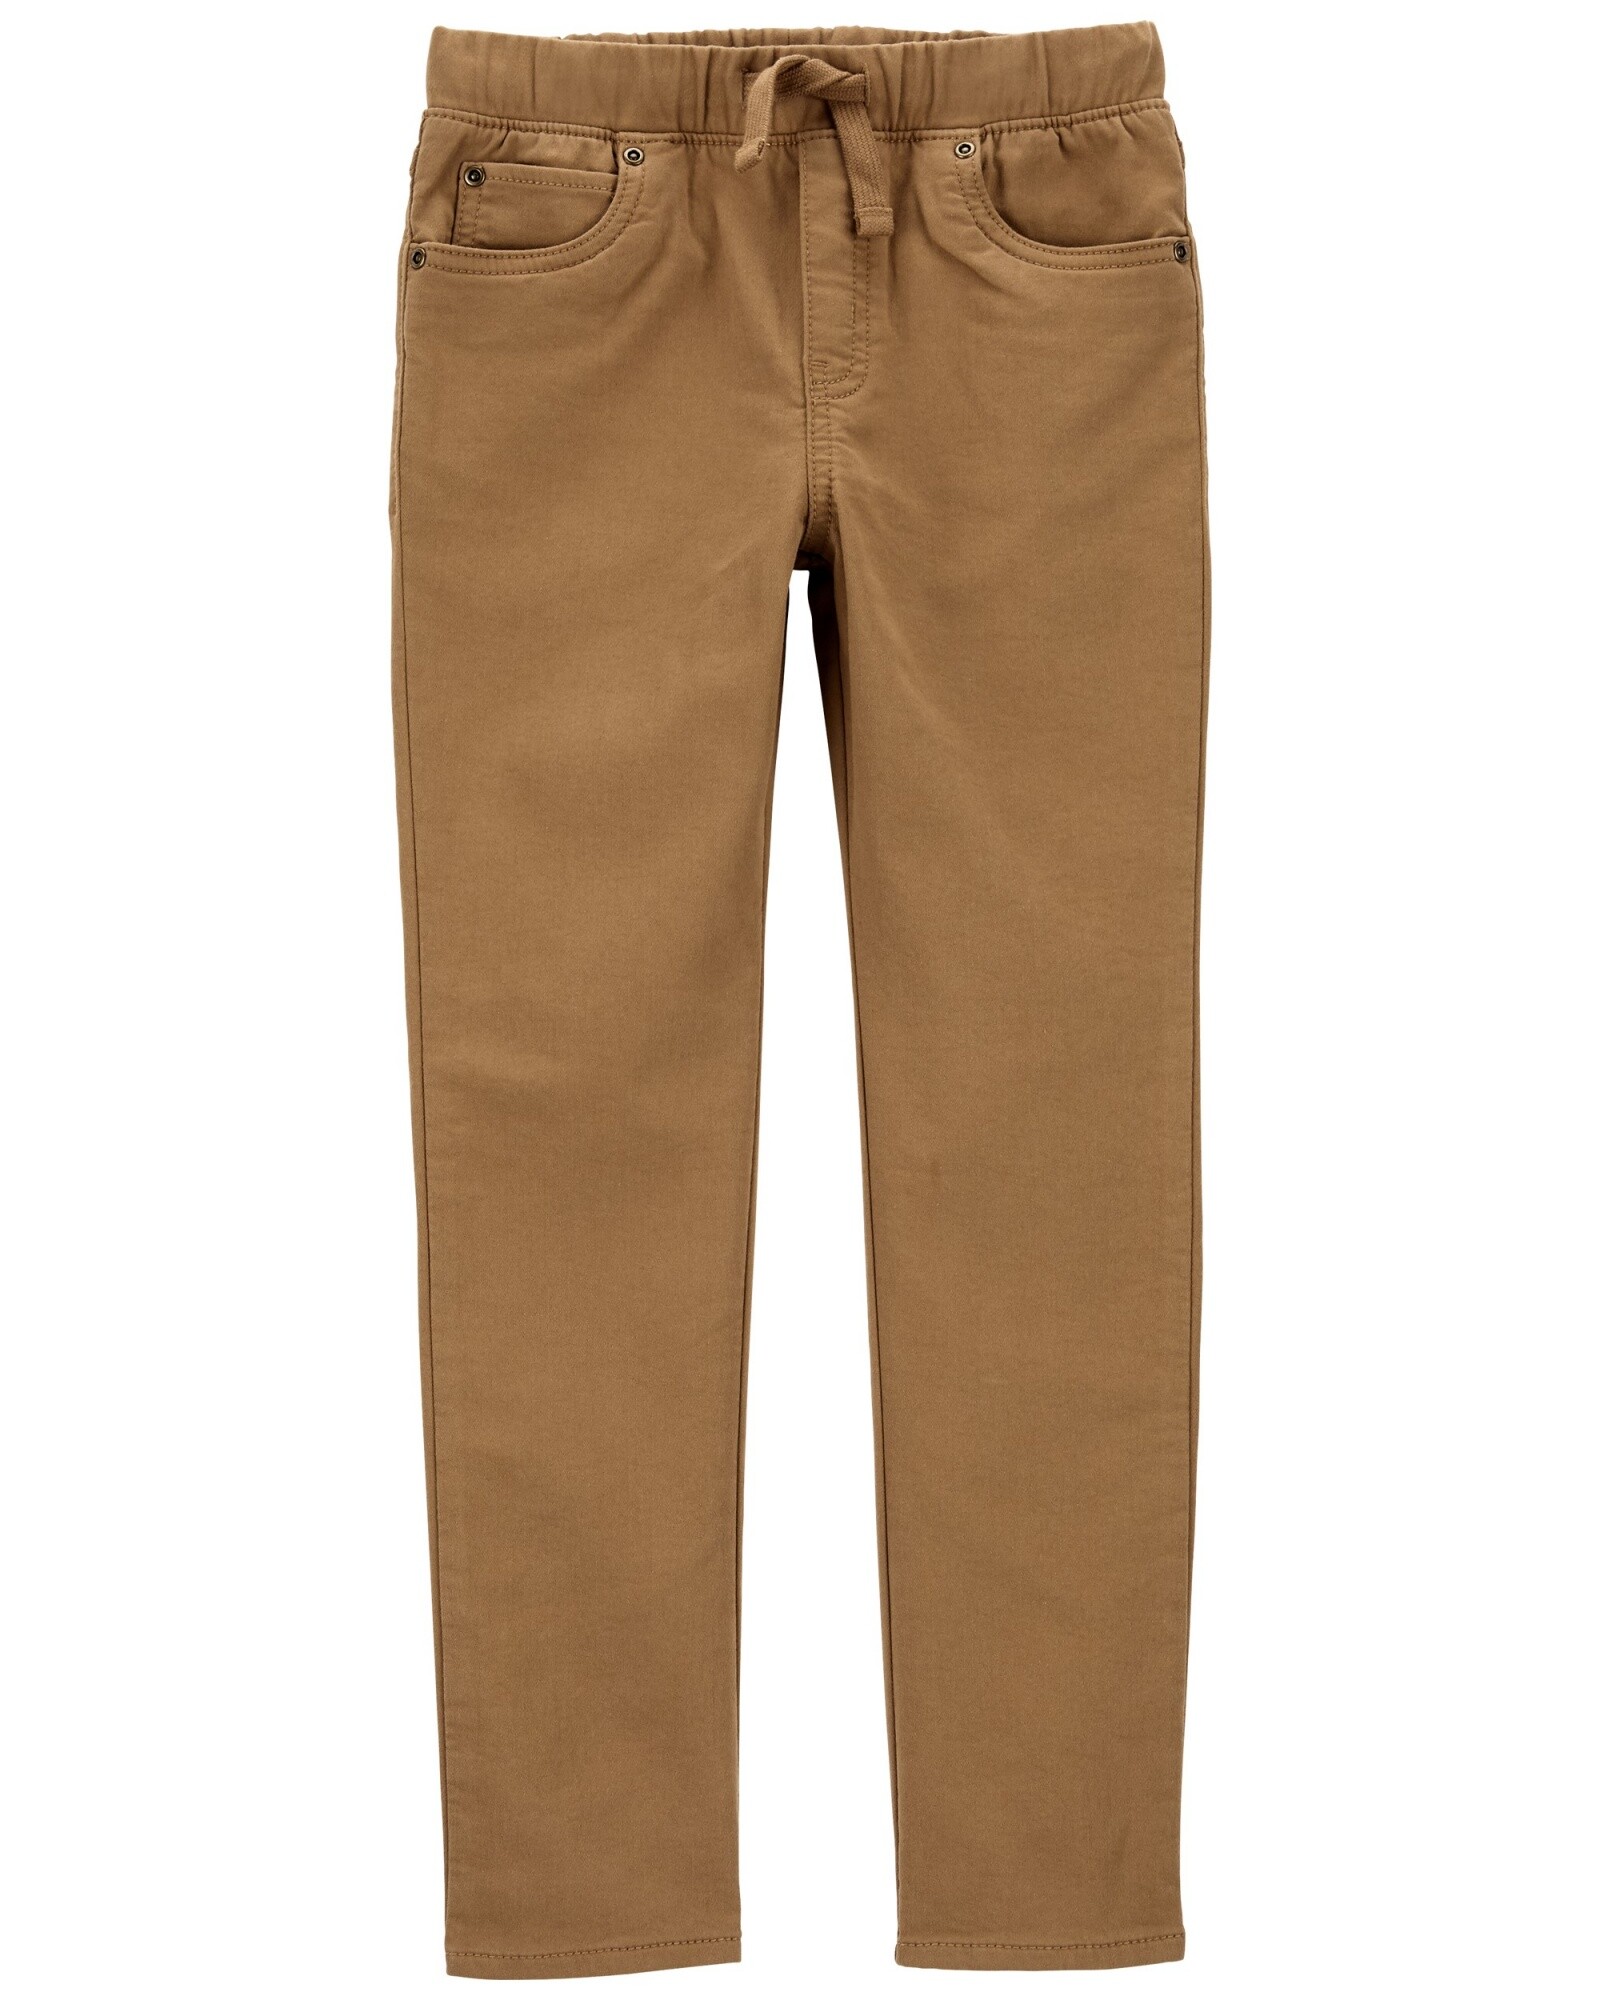 Pantalón en tejido dobby, color khaki. Talles 6-8 Sin color